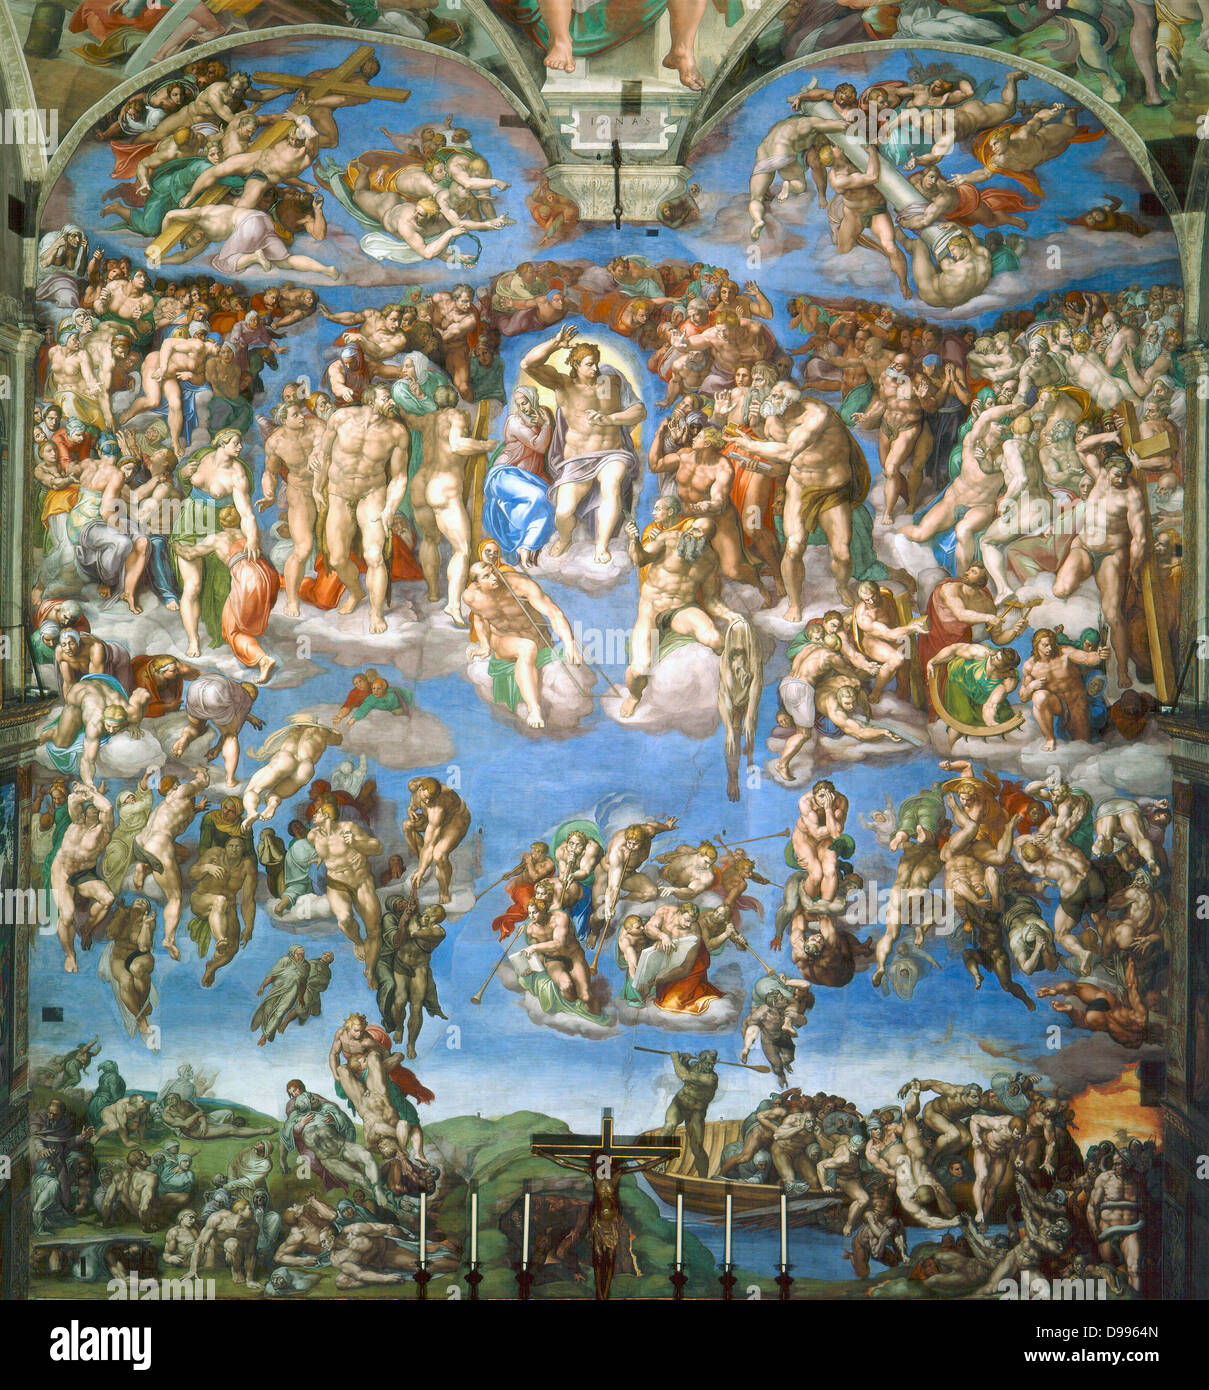 Das jüngste Gericht von Michelangelo gemalt zwischen 1536 und 1541 Stockfoto